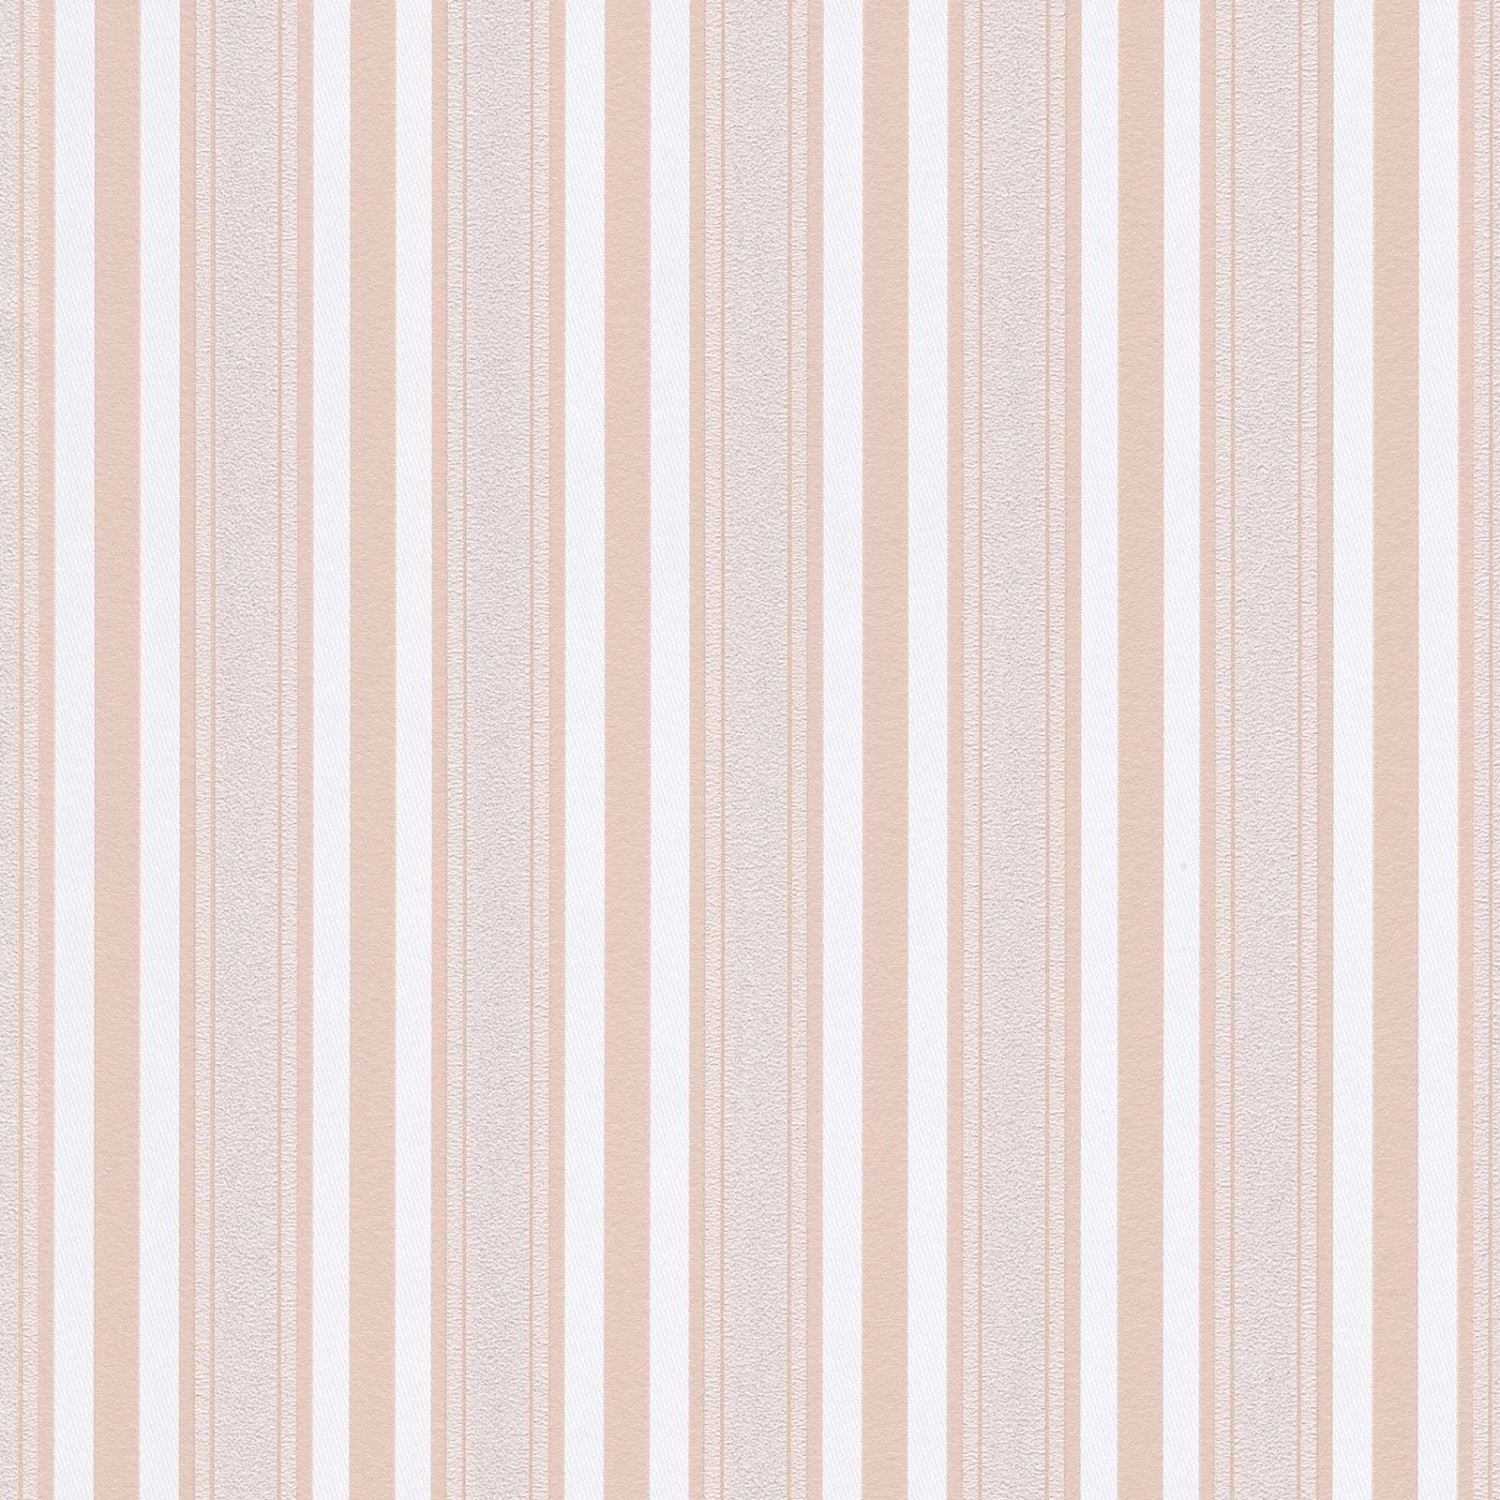 Bricoflor Vlies Mustertapete in Rosa Weiß Gestreifte Tapete Modern Ideal für Schlafzimmer und Kinderzimmer Rosa Streifen